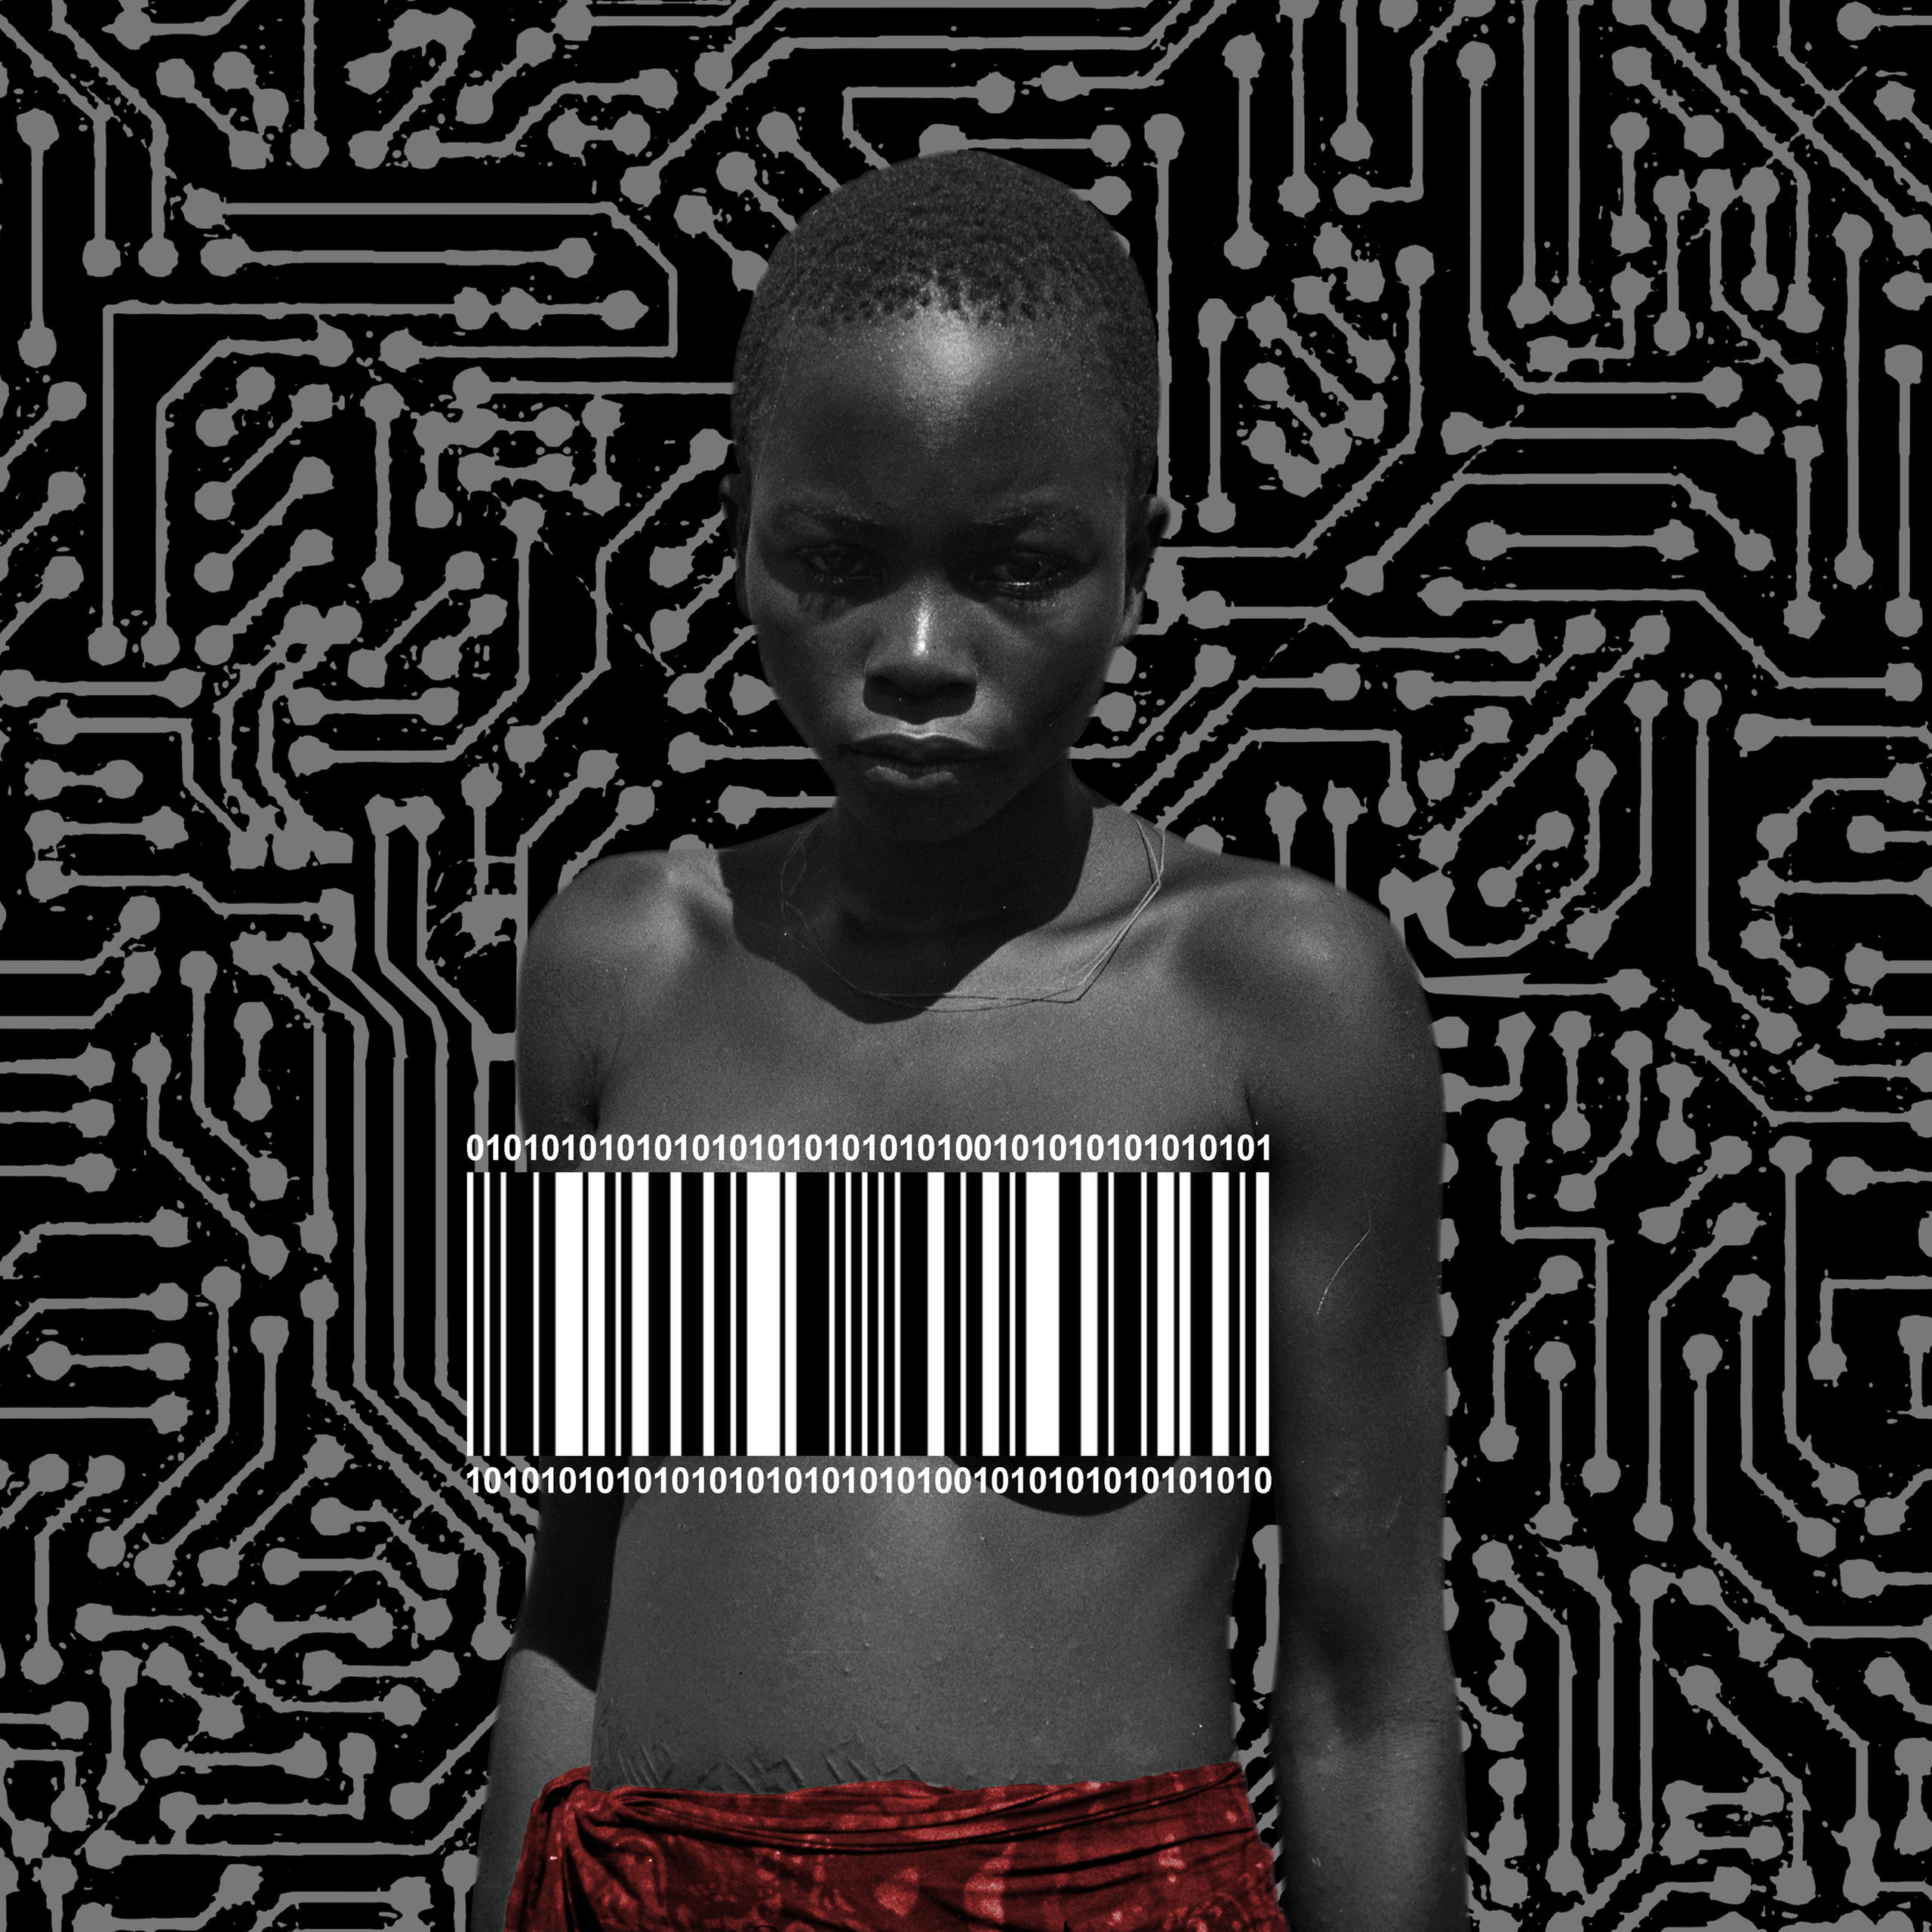 Portrait de femme africaine avec les seins cachés par un code-barre.